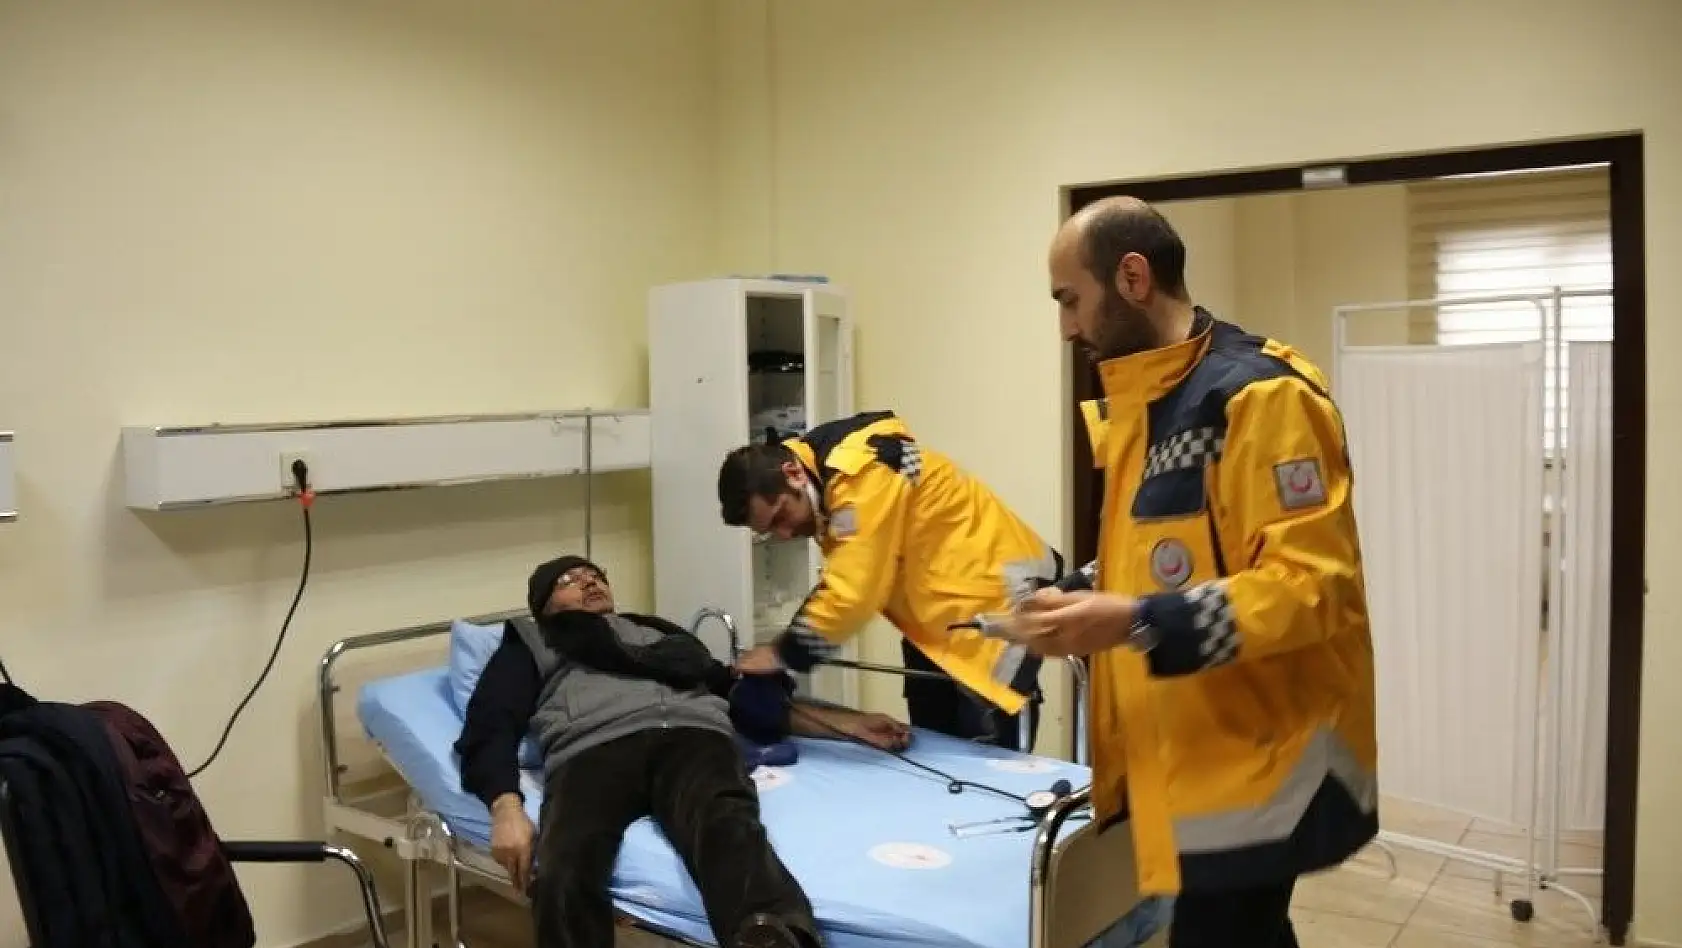 Erciyes Kayak Merkezi'nde açılan poliklinik 500 kişiye hizmet verdi
